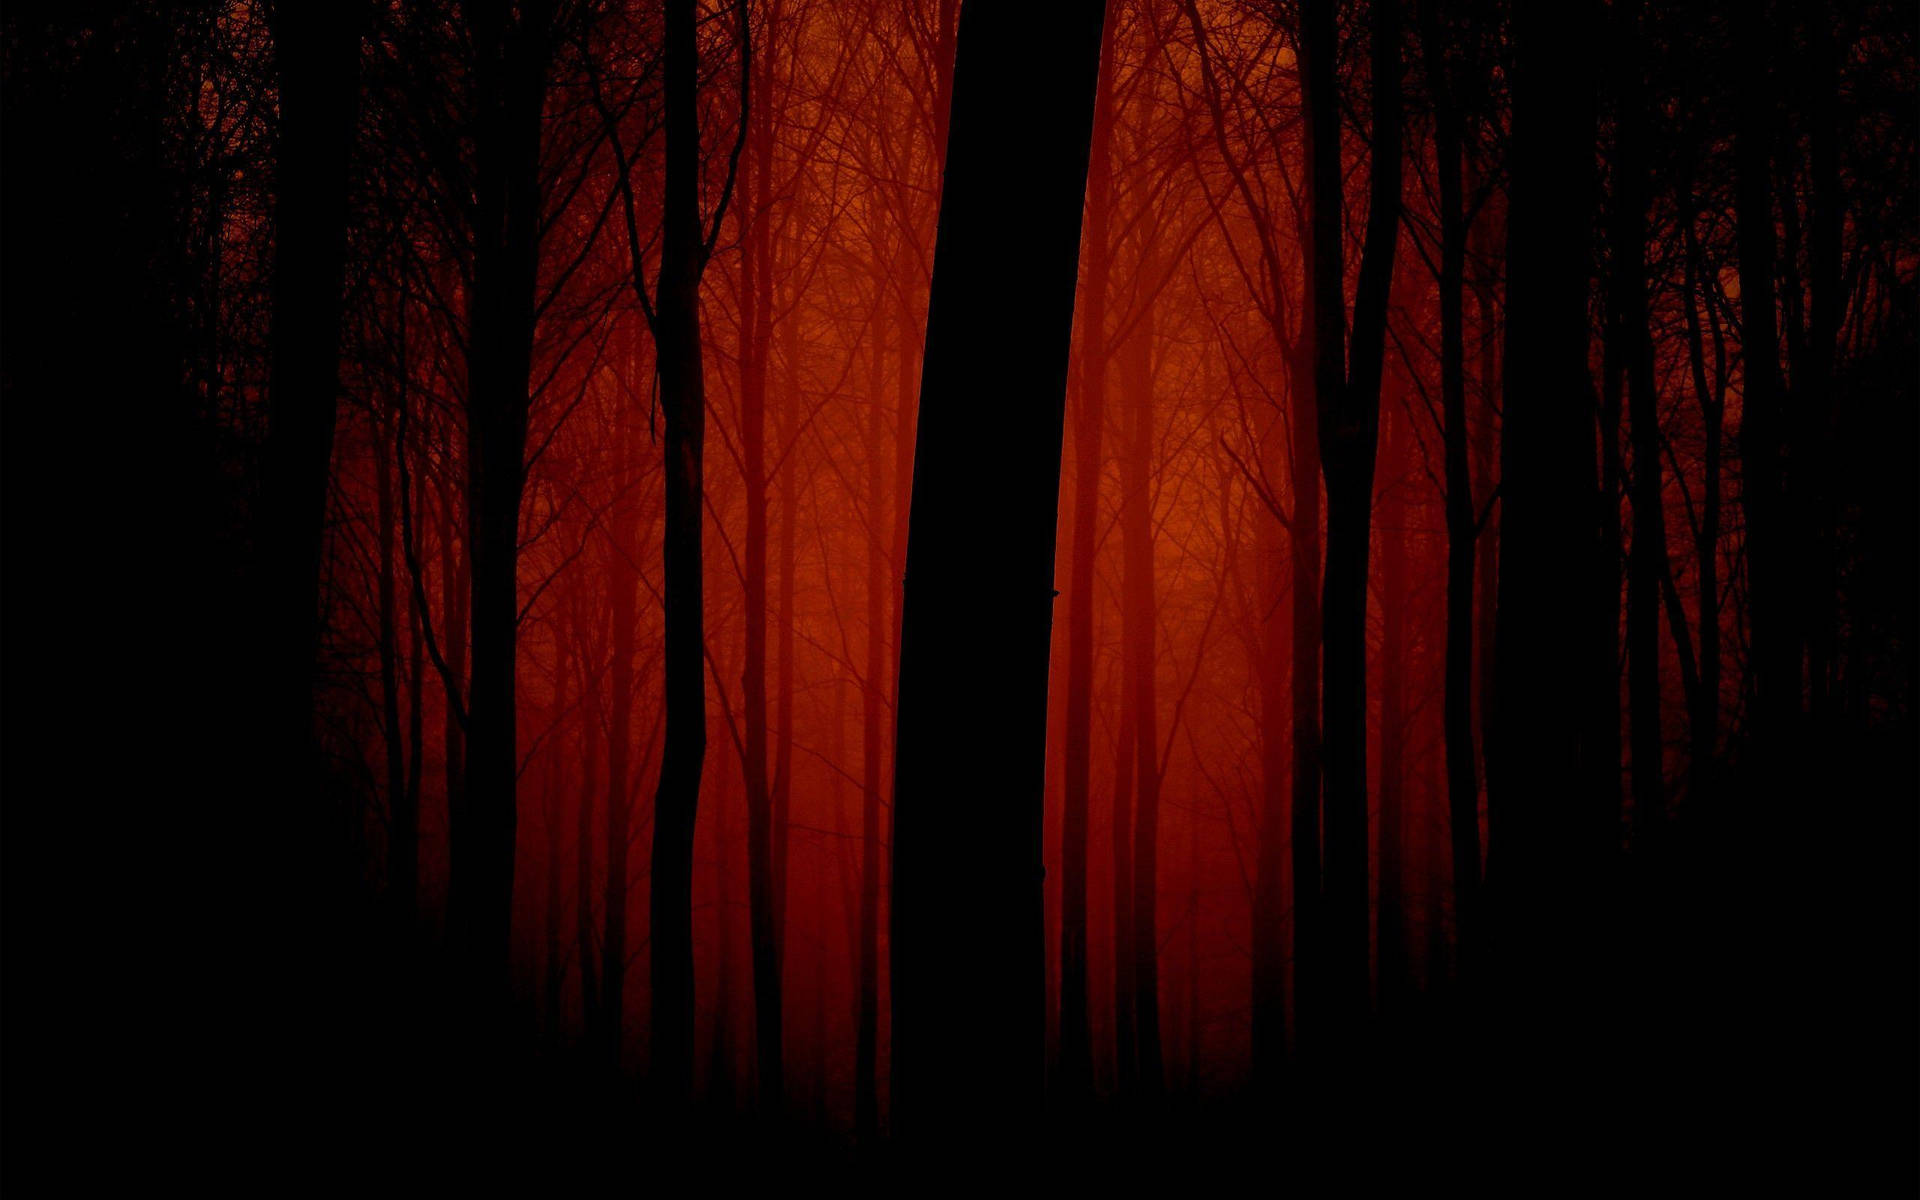 Dark Red Forest